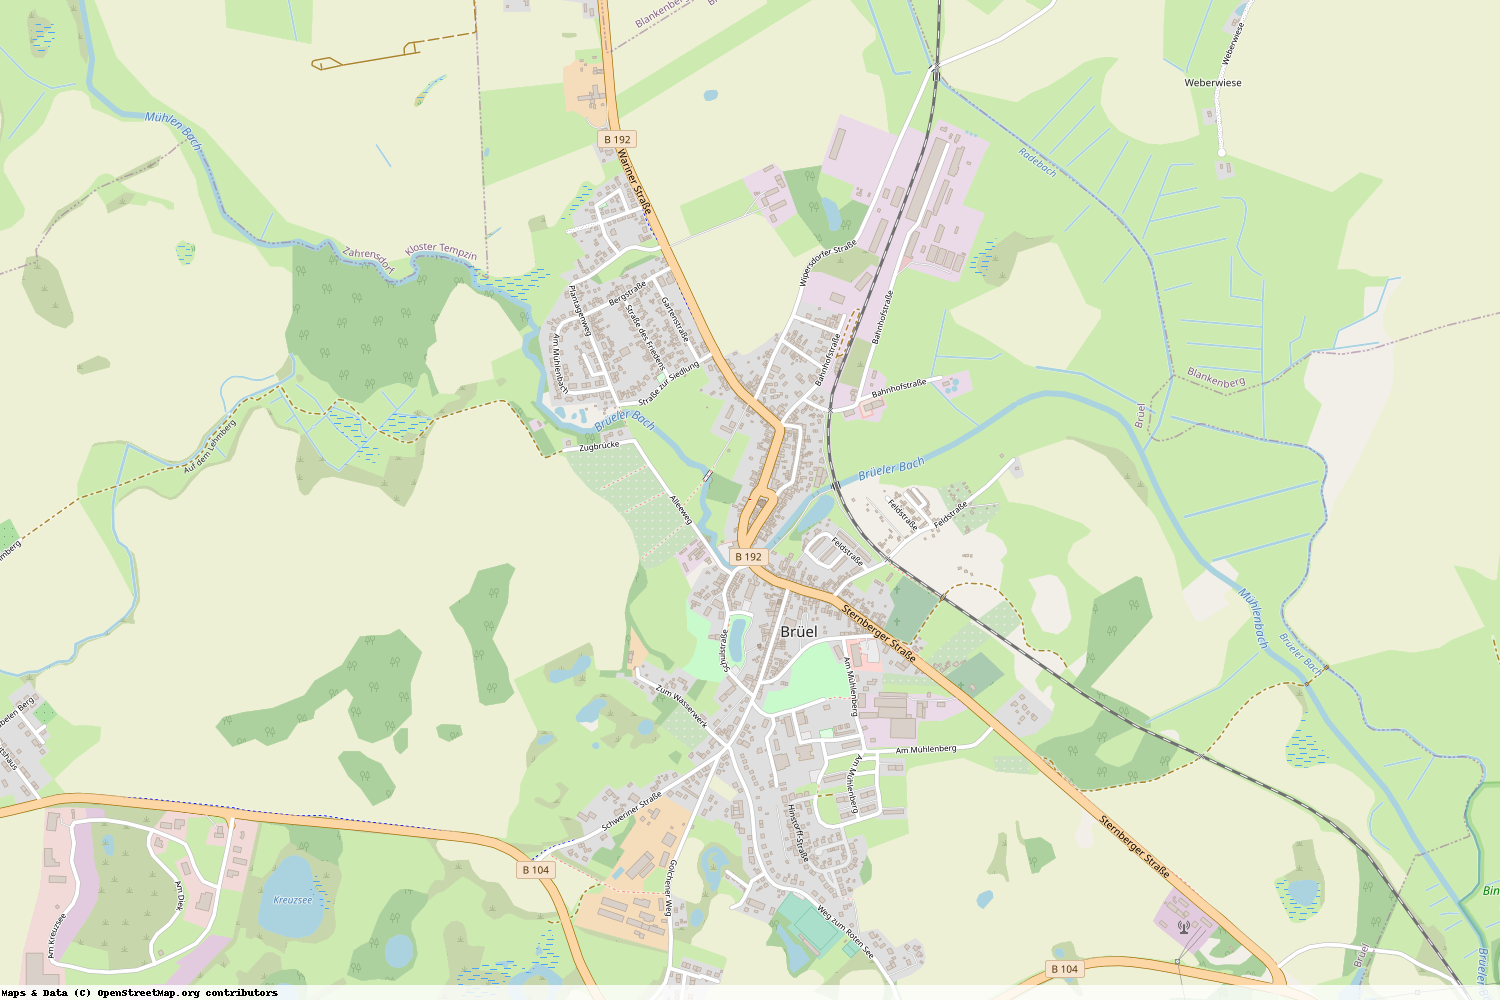 Ist gerade Stromausfall in Mecklenburg-Vorpommern - Ludwigslust-Parchim - Brüel?